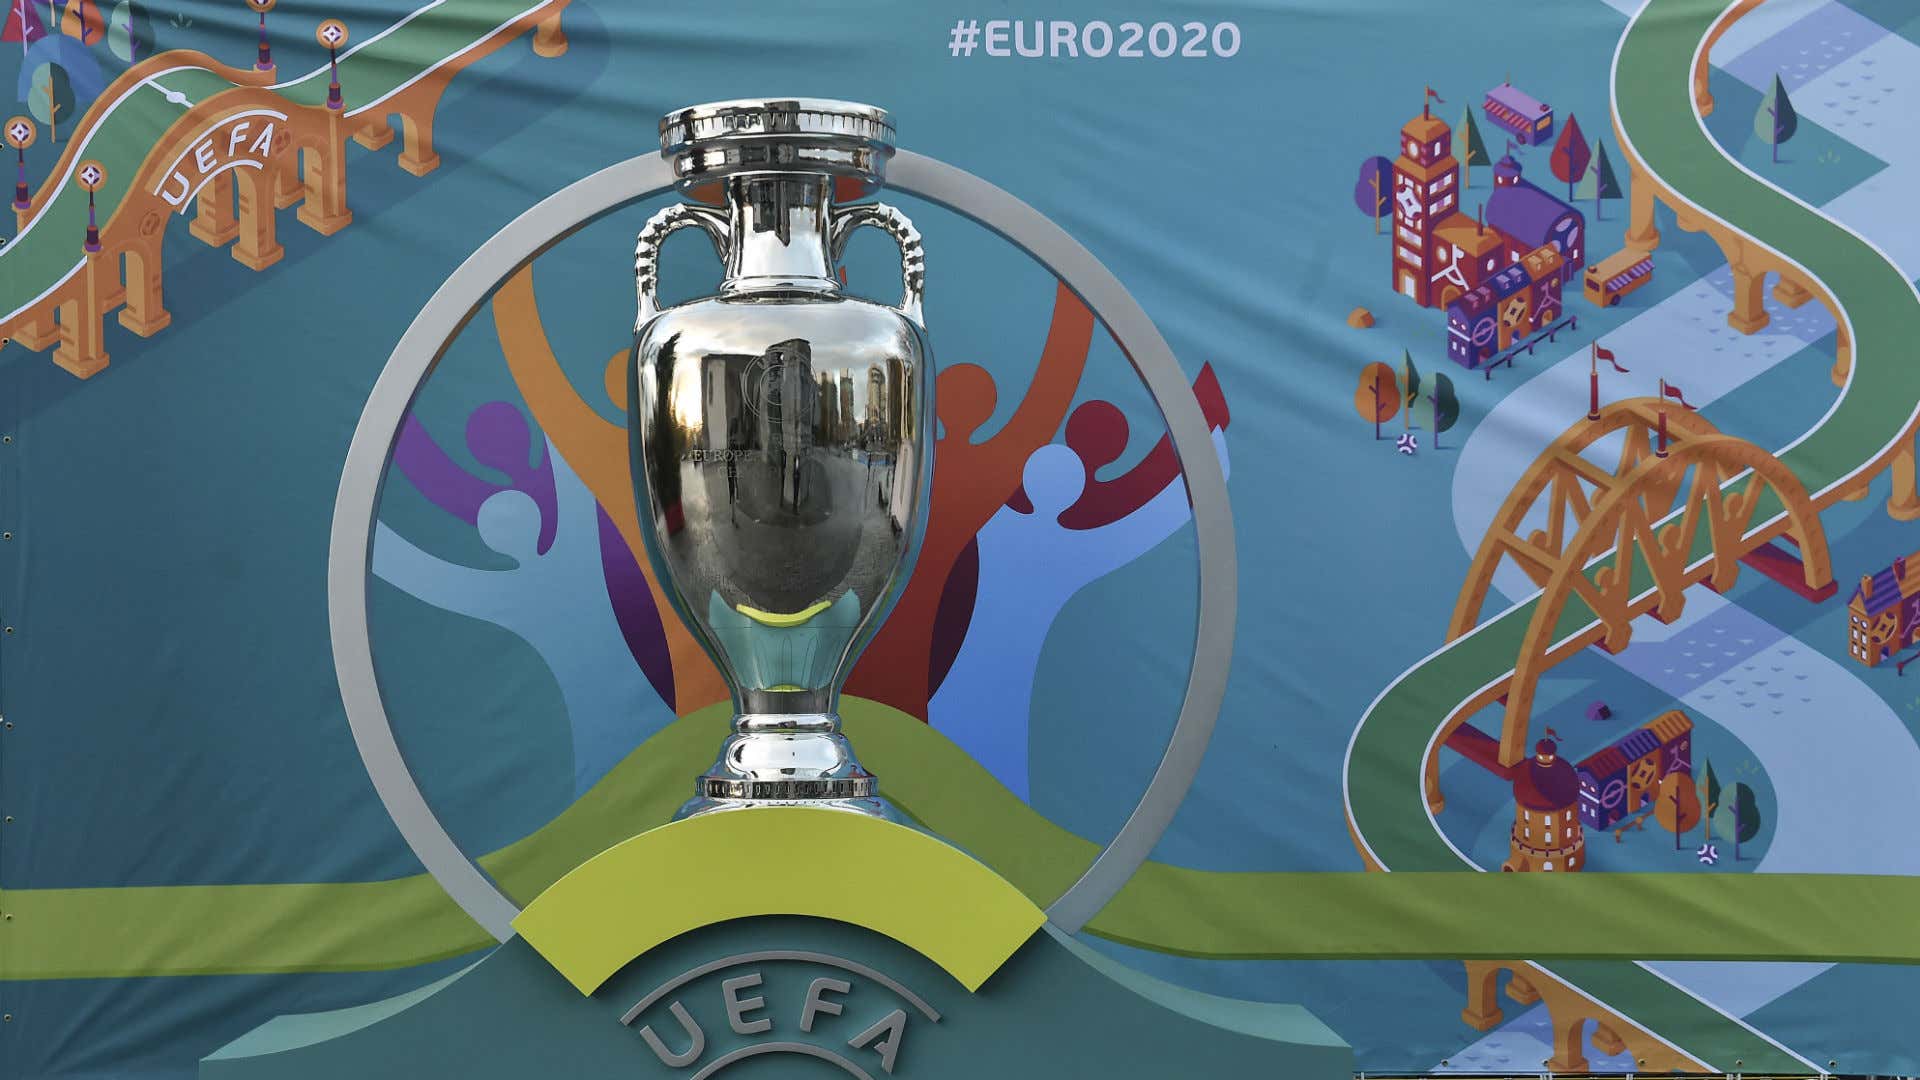 Euro 2020 Henri Delaunay Cup 14112016